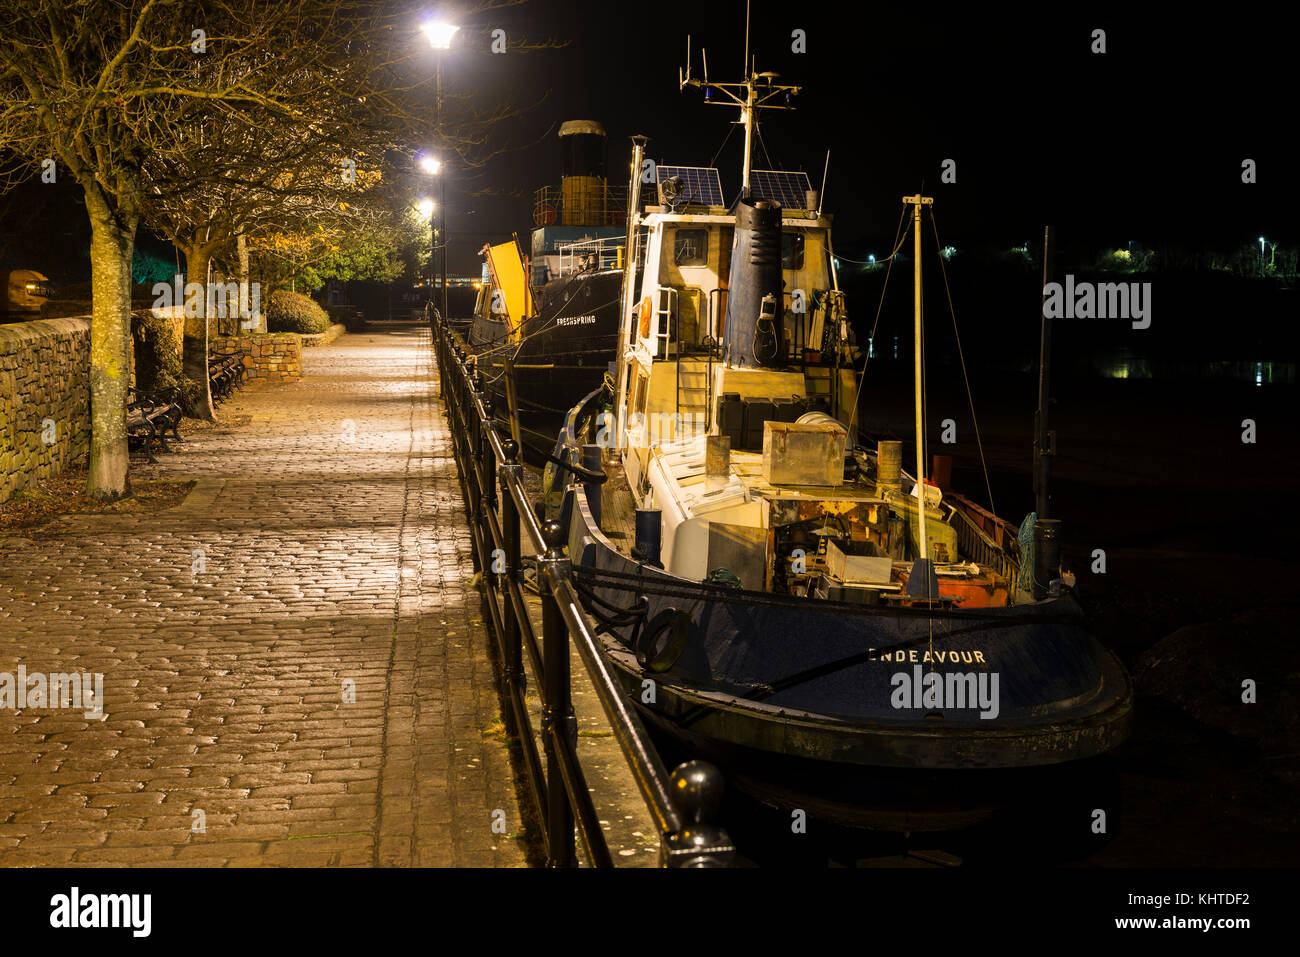 Remorqueurs amarrés au quai de Bideford, photo de nuit Banque D'Images